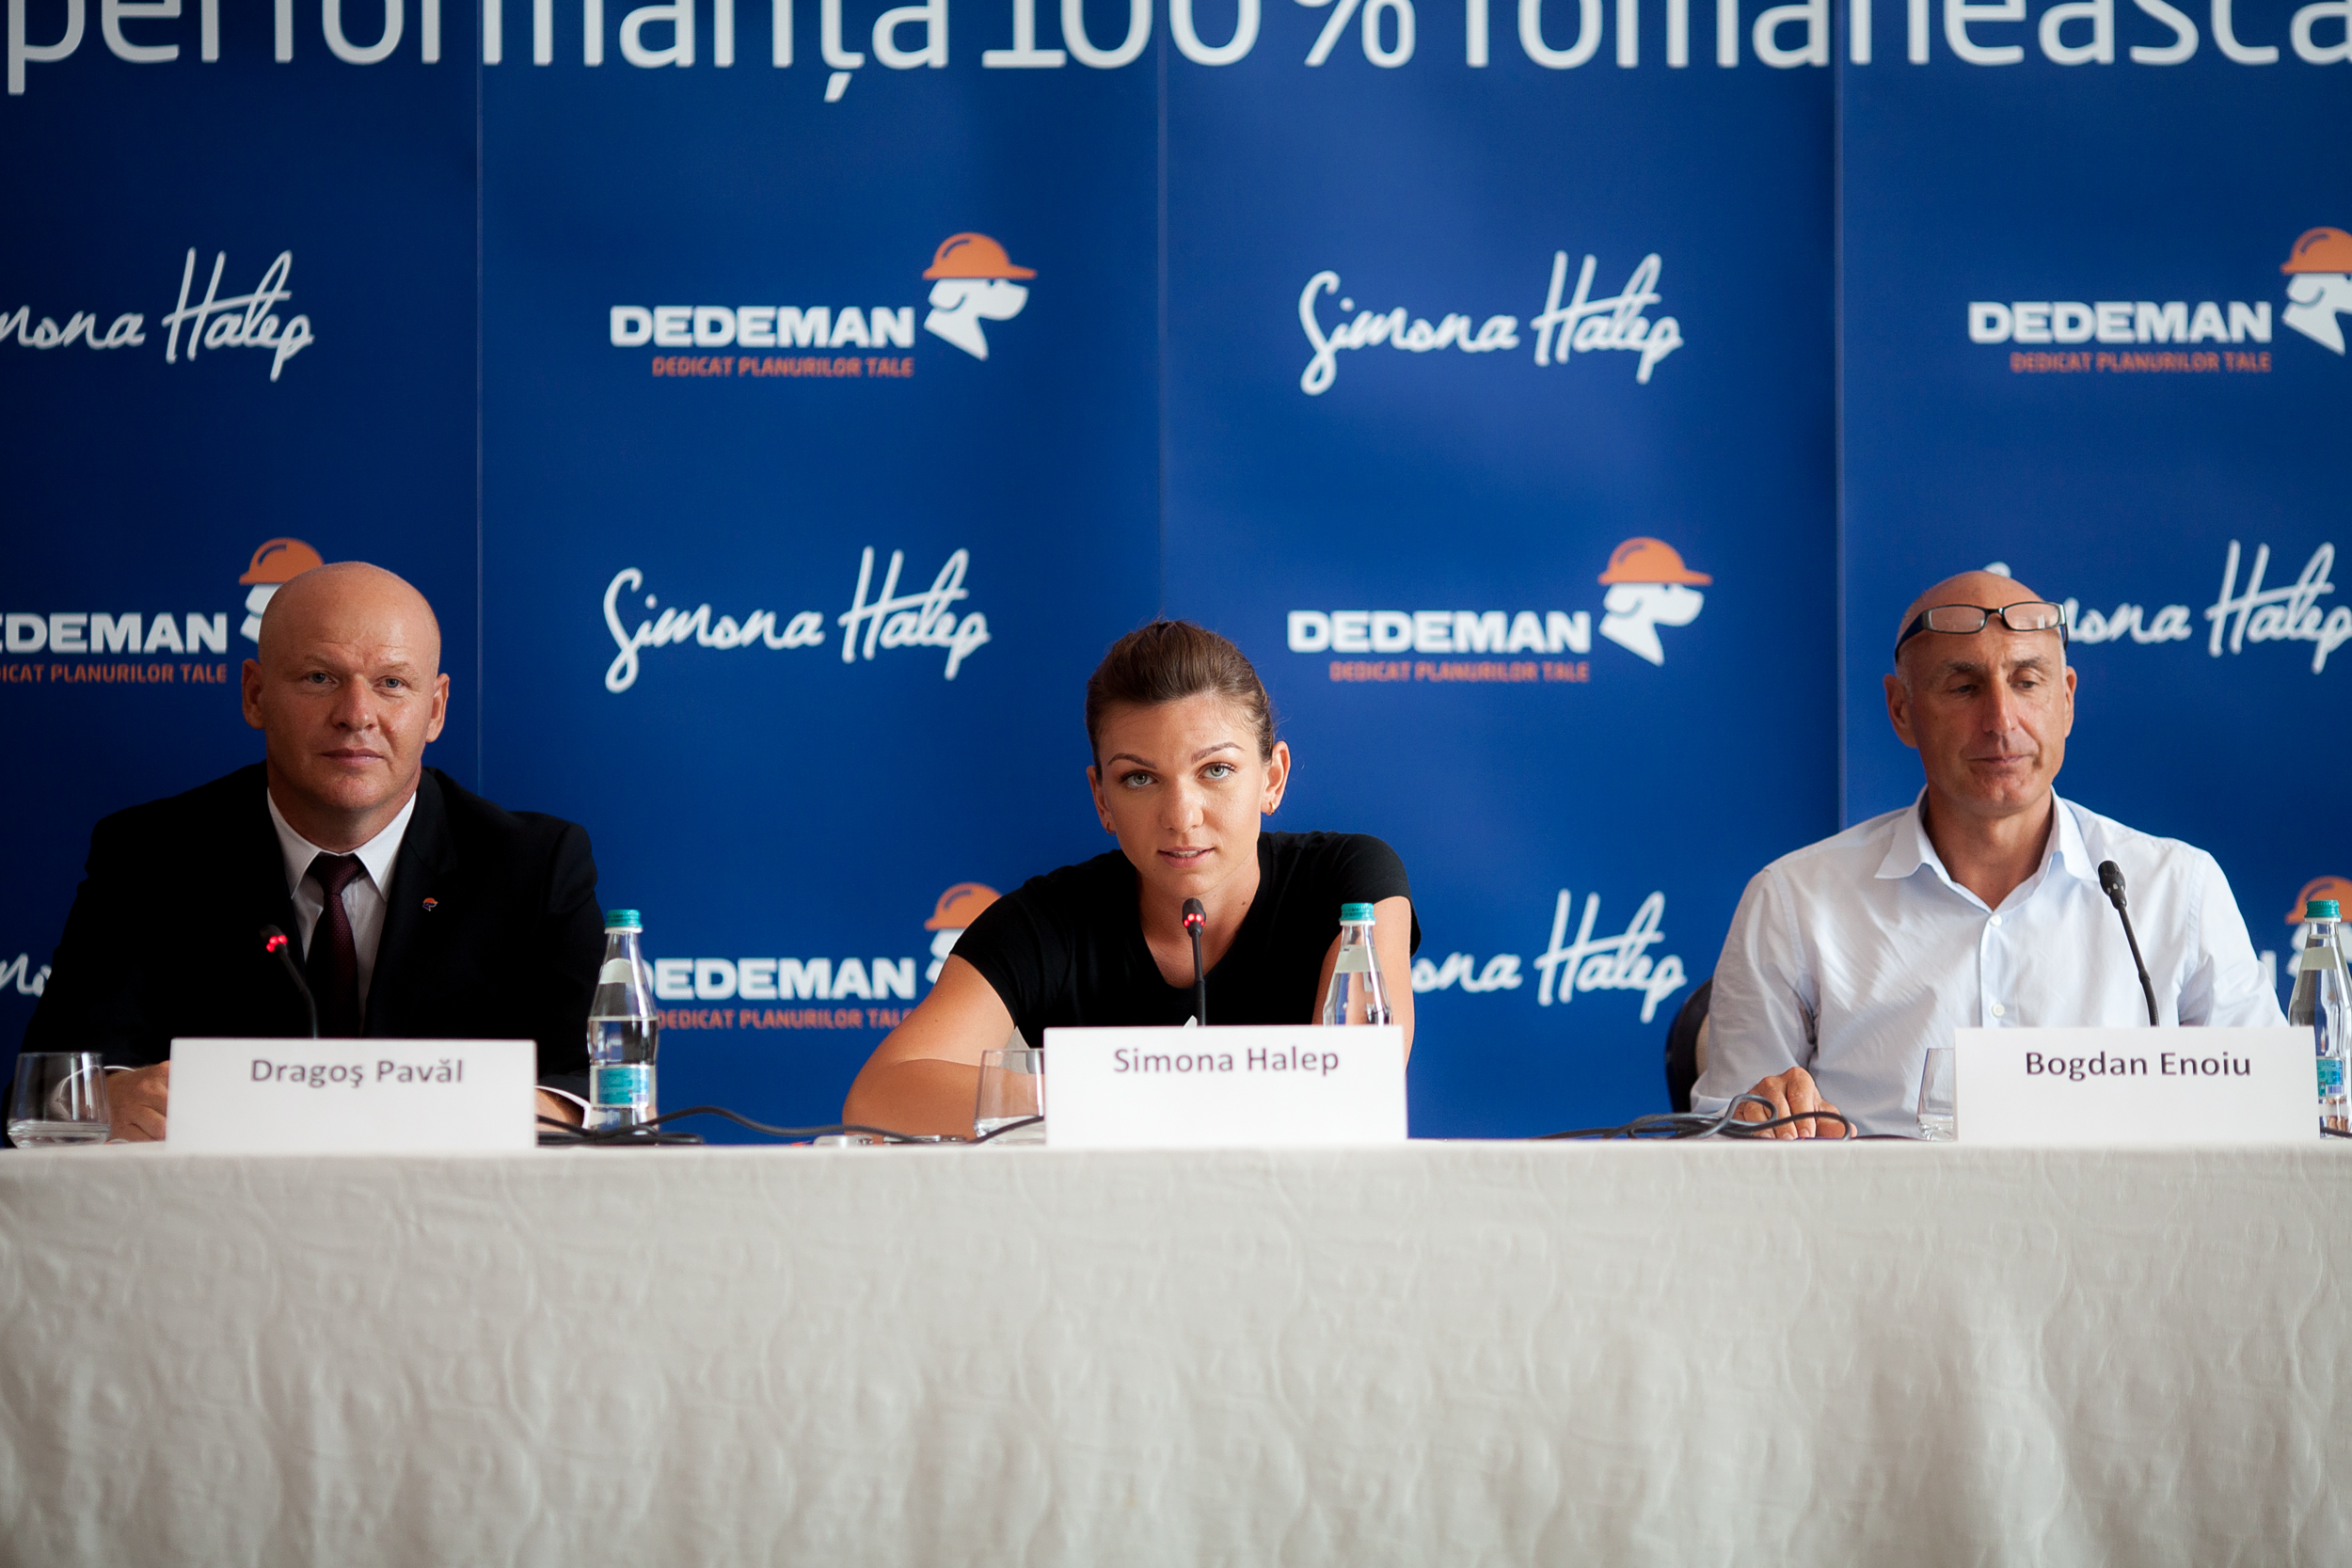 Conferința de presă ce anunța colaborarea dintre Simona Halep și Dedeman. Inquam Photos